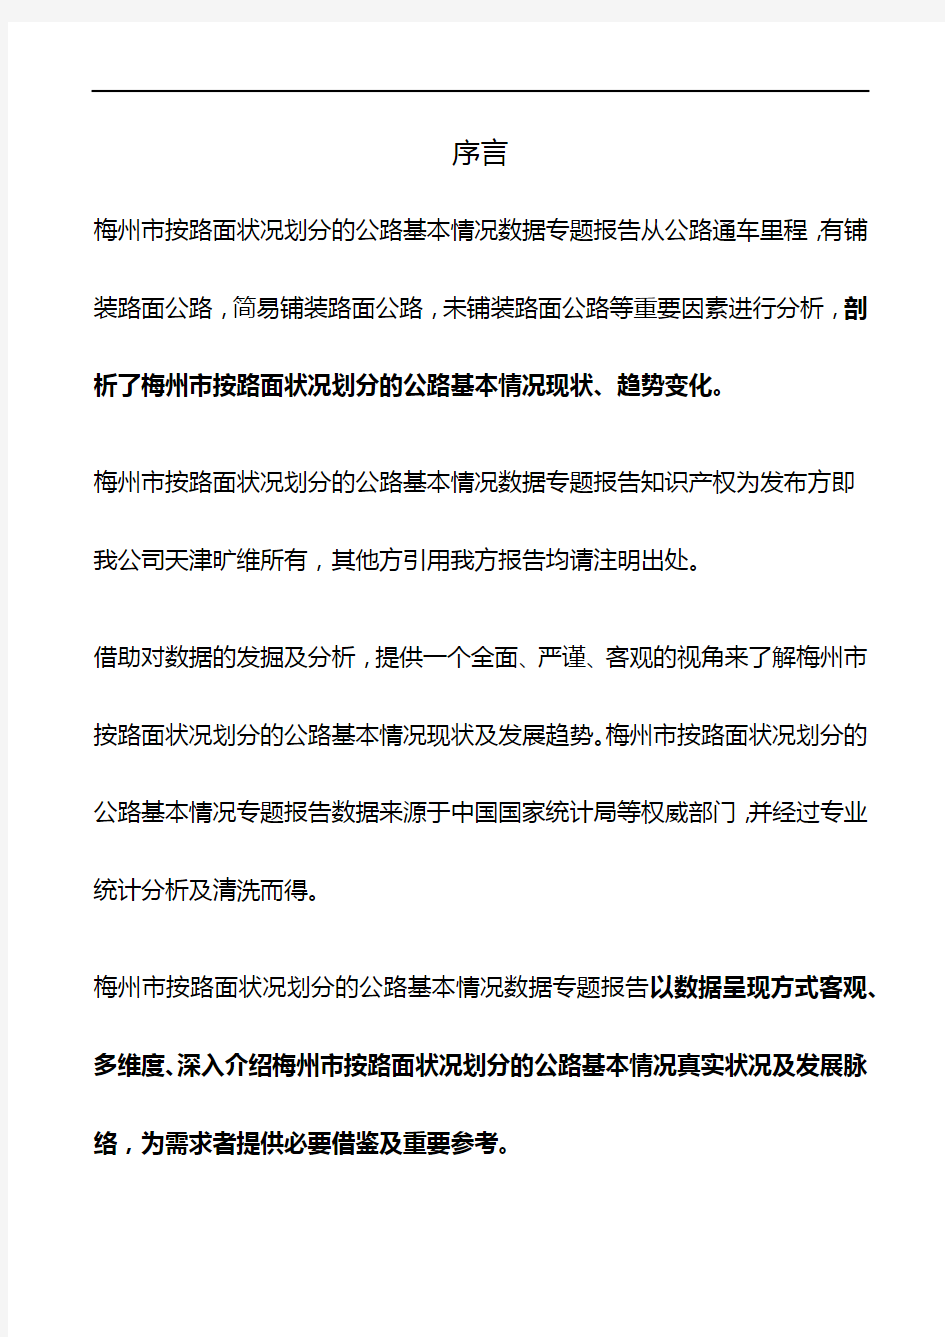 广东省梅州市按路面状况划分的公路基本情况数据专题报告2019版